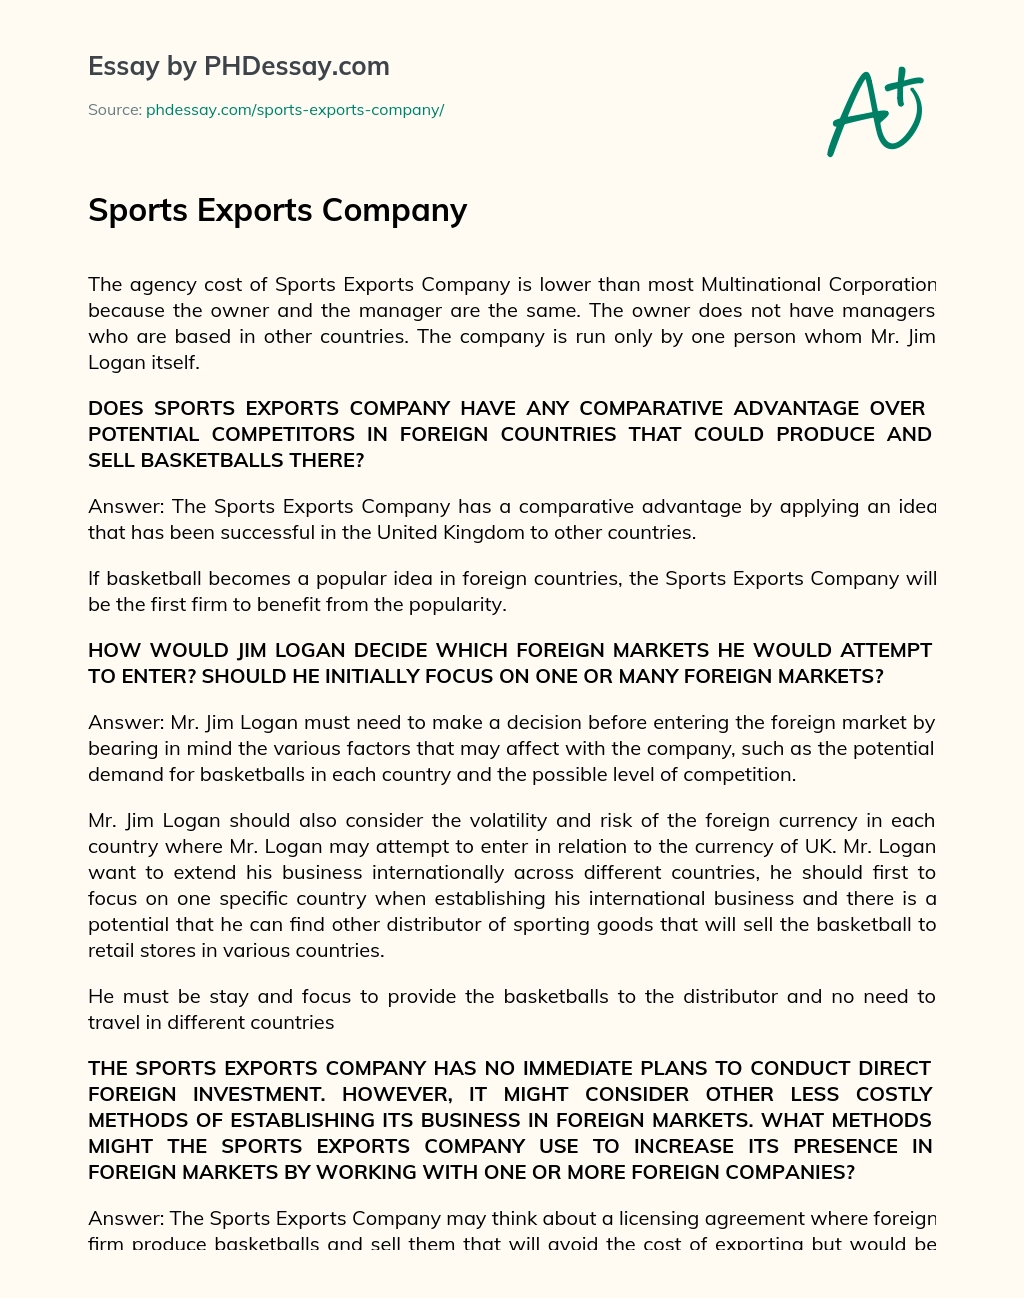 Sports Exports Company essay